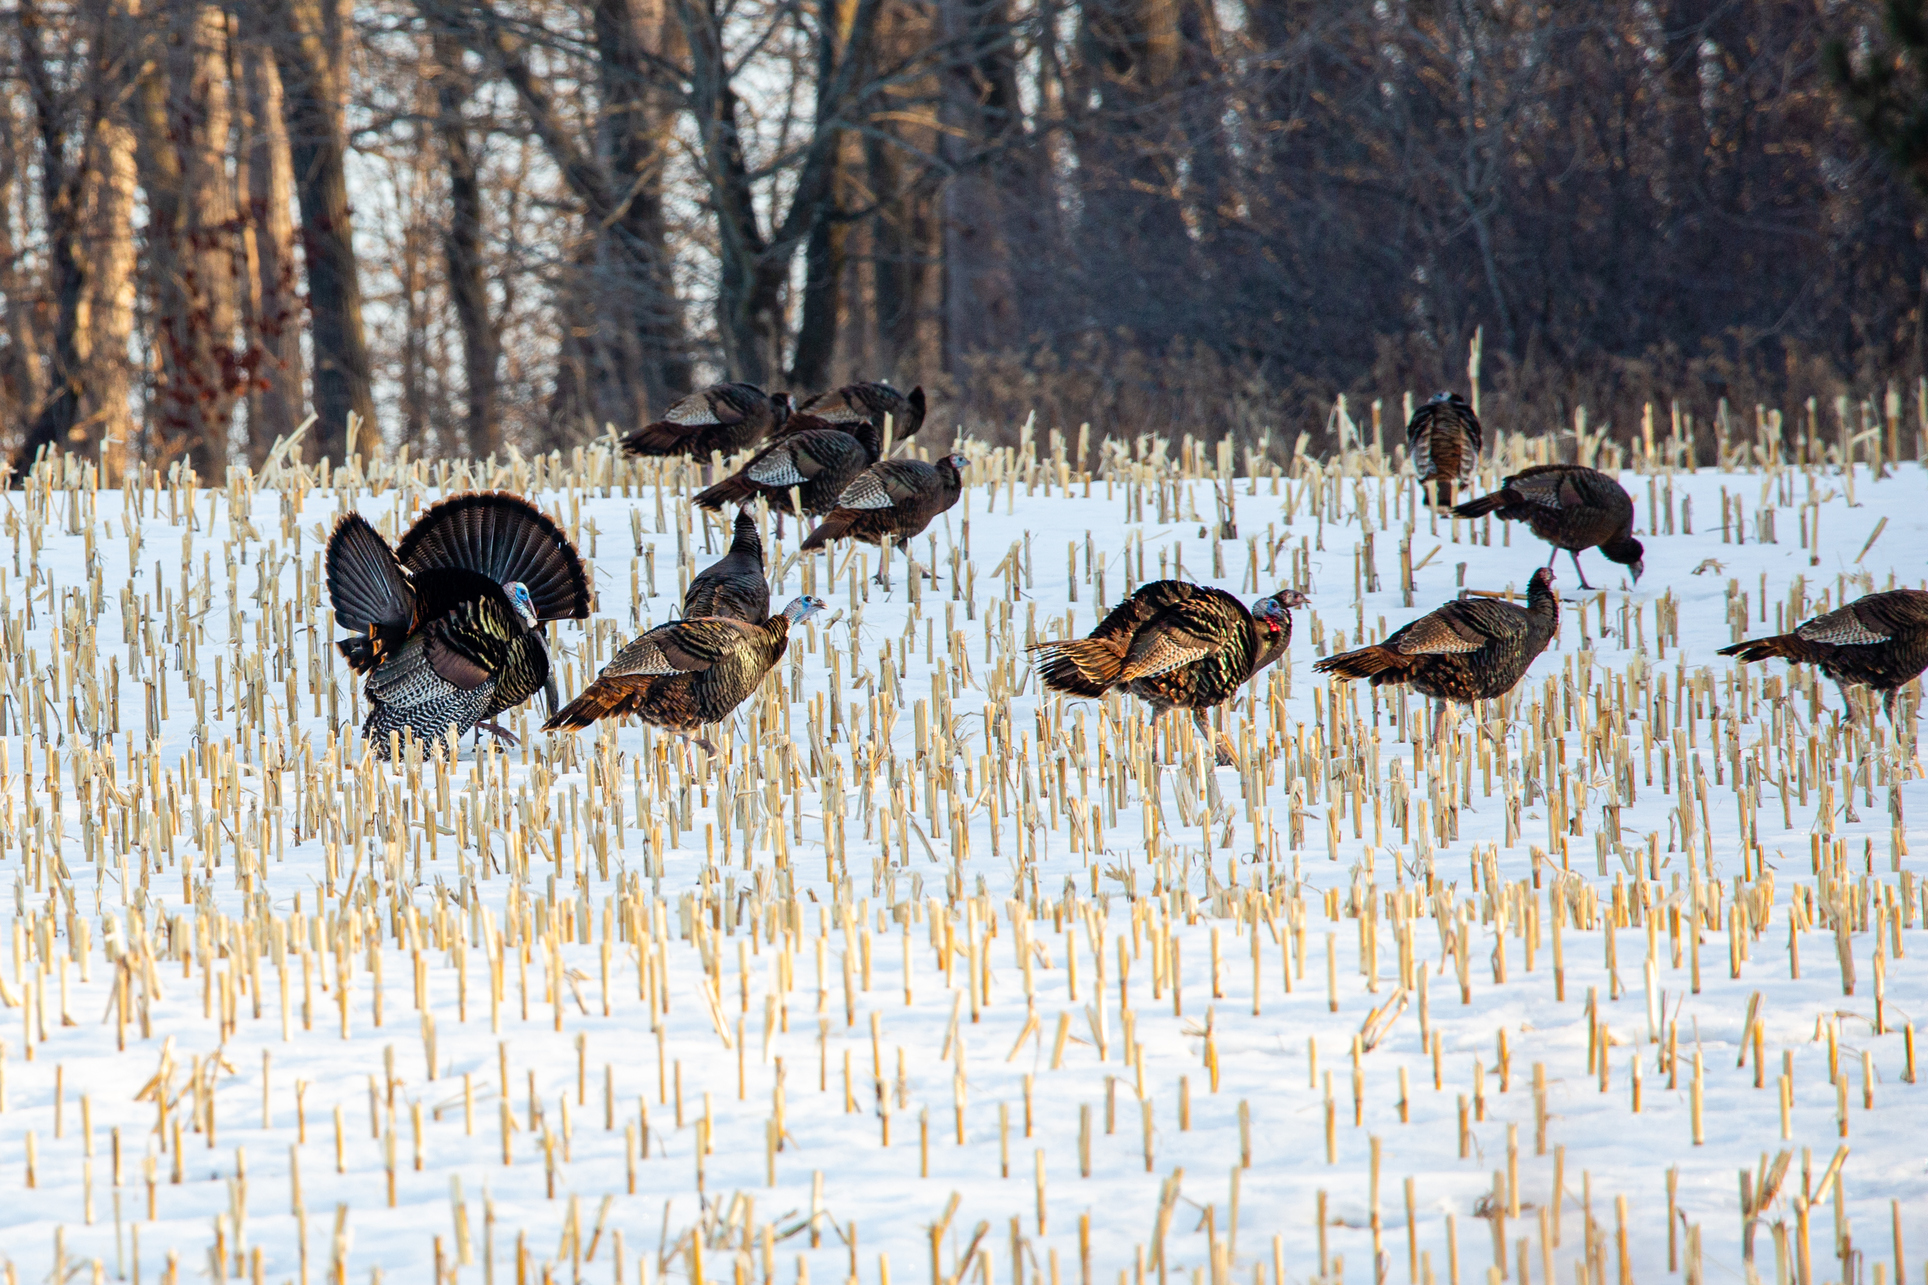 Flock of wild Wisconsin turkeys on a harvested corn field in March.